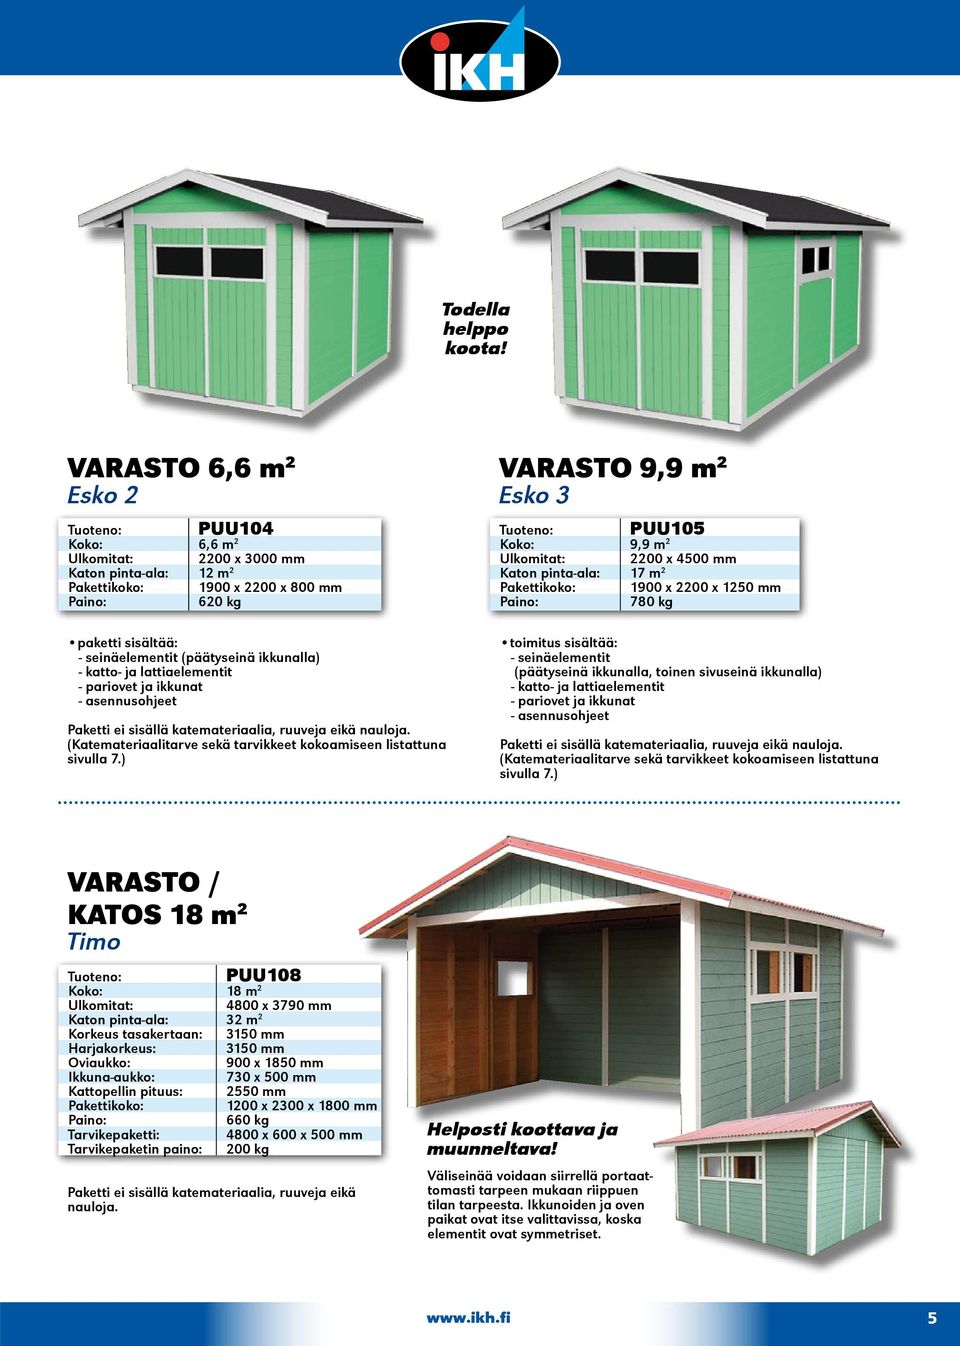 katto- ja lattiaelementit - pariovet ja ikkunat - asennusohjeet Paketti ei sisällä katemateriaalia, ruuveja eikä nauloja. (Katemateriaalitarve sekä tarvikkeet kokoamiseen listattuna sivulla 7.